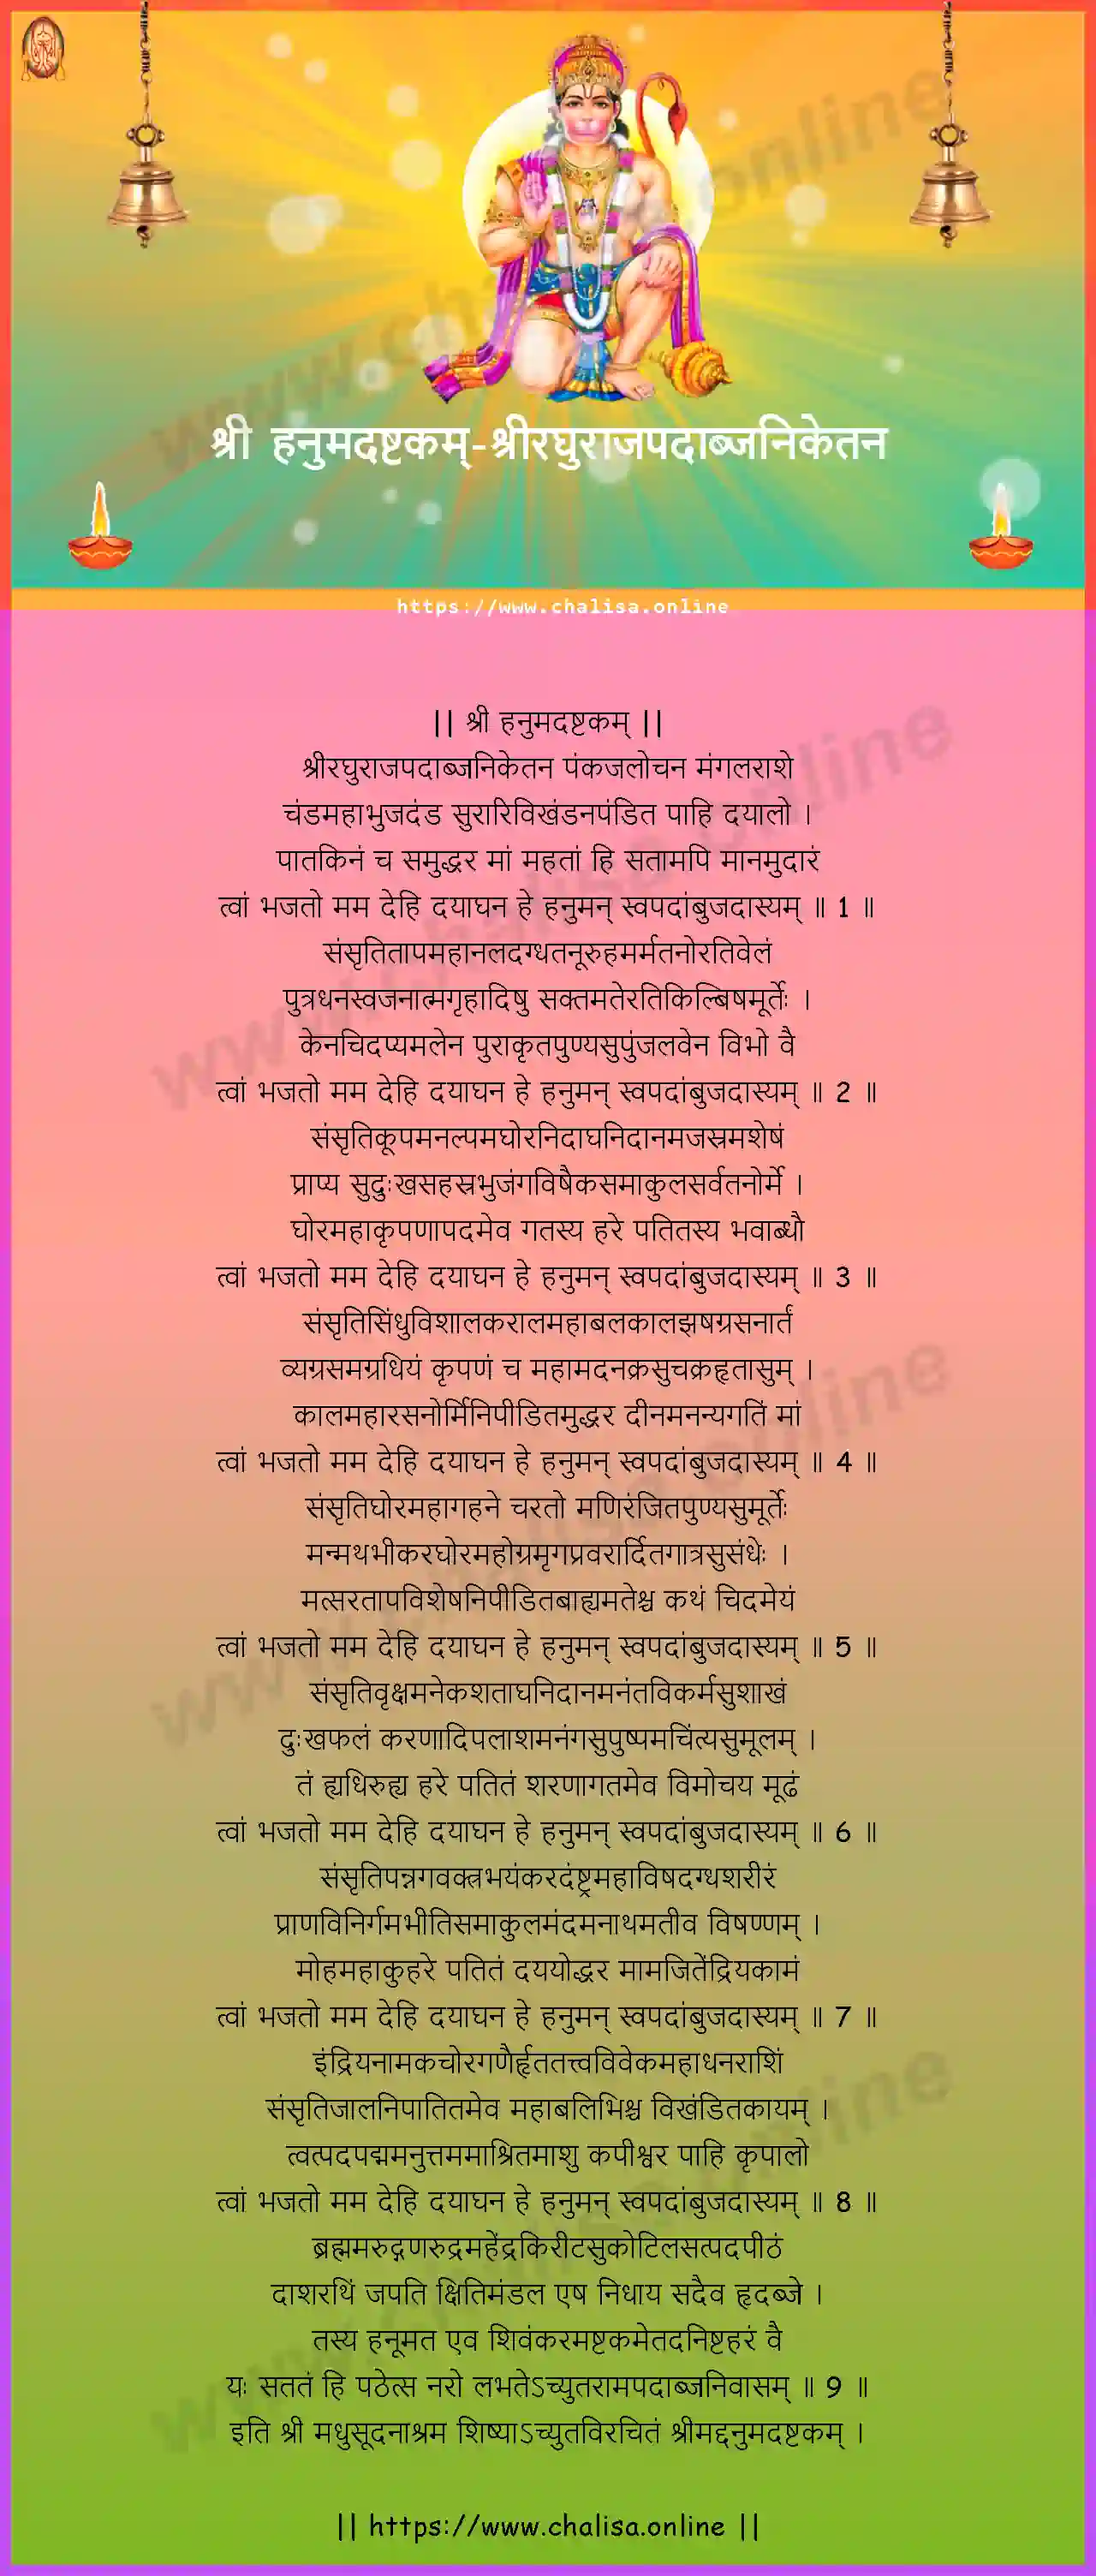 sriraghurajapadabjaniketana-hanuman-ashtakam-marathi-marathi-lyrics-download